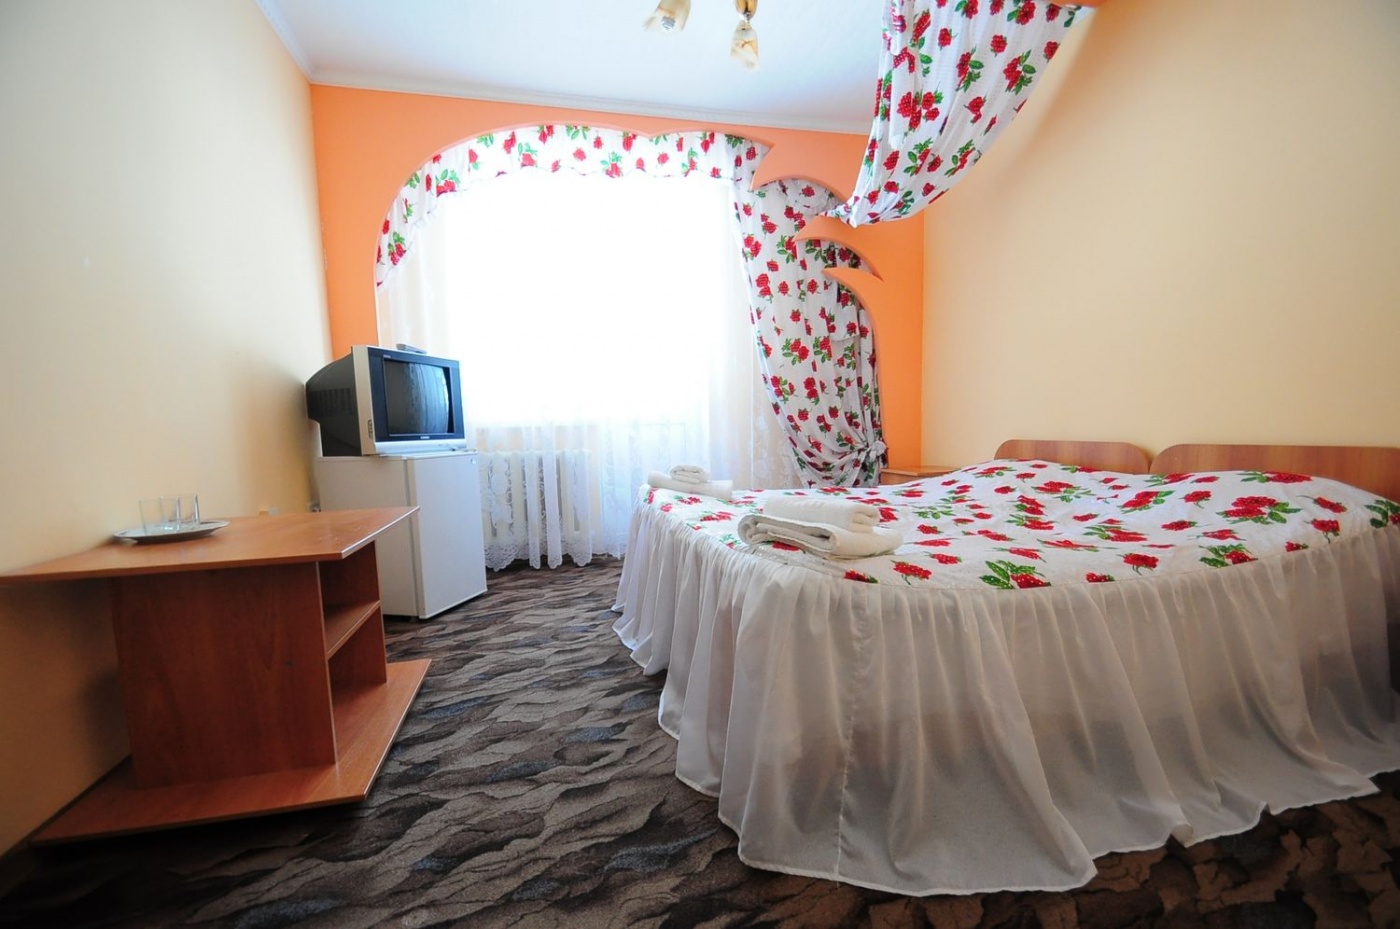  Отель «Шахерезада» Кабардино-Балкарская Республика Стандарт, фото 2